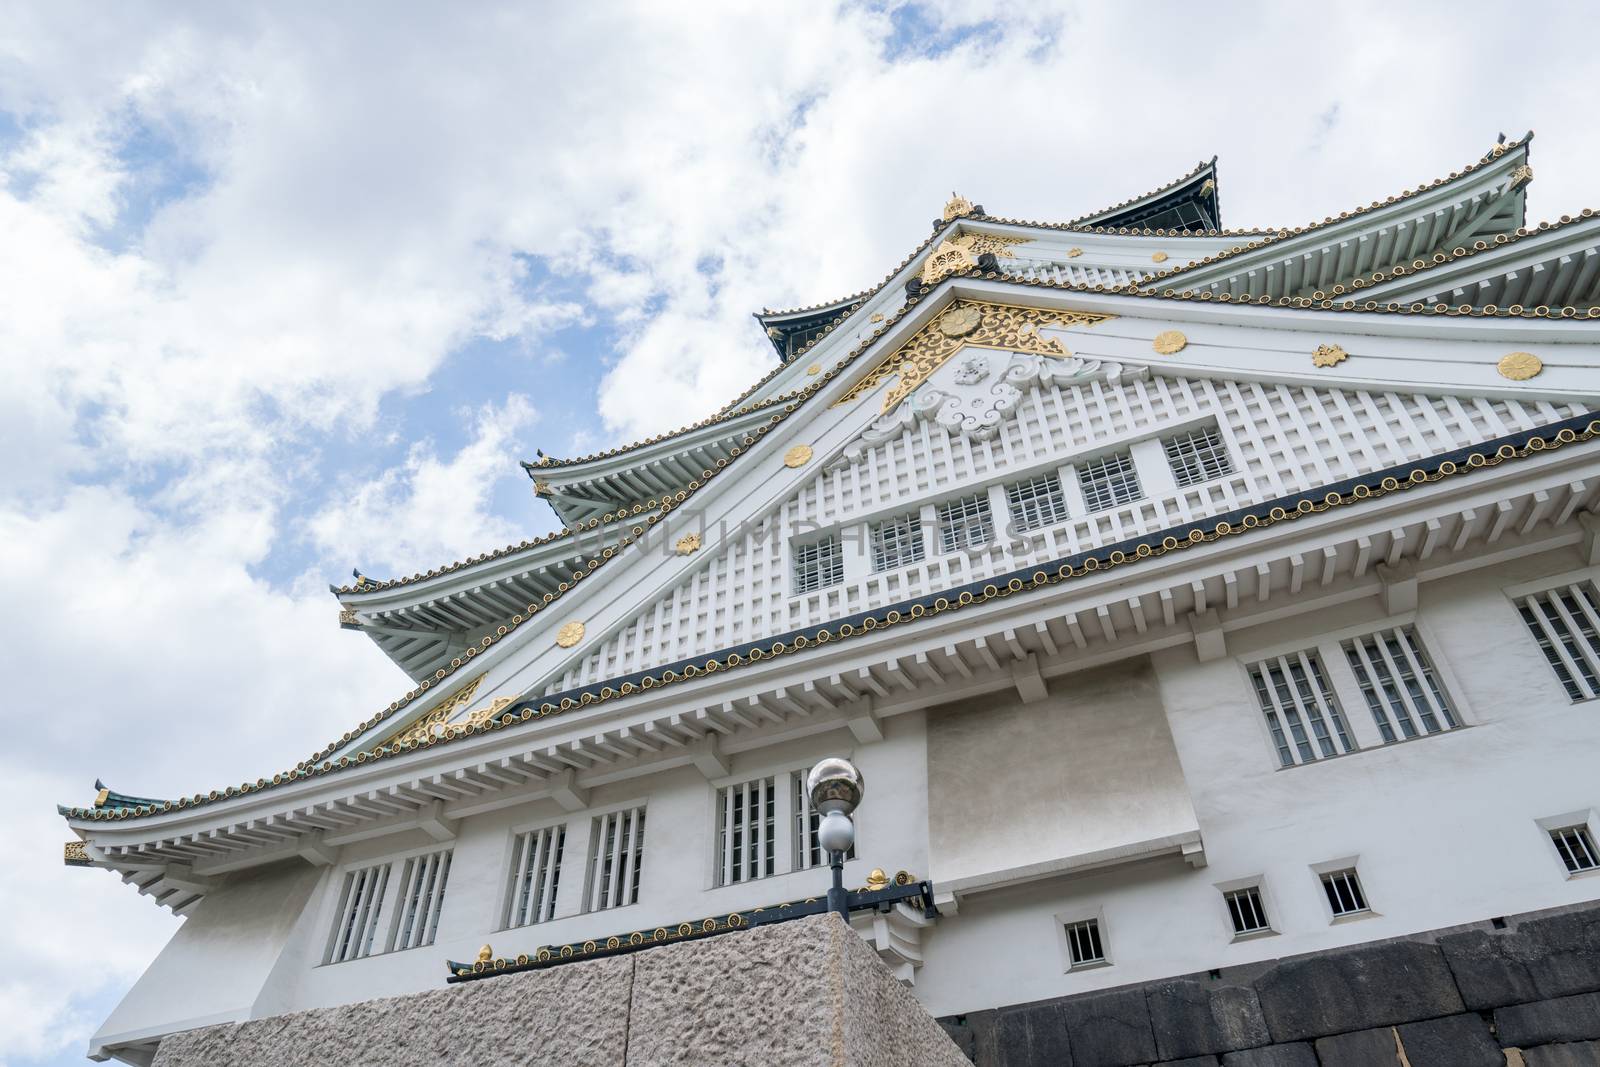 Osaka castle in Japan by antpkr